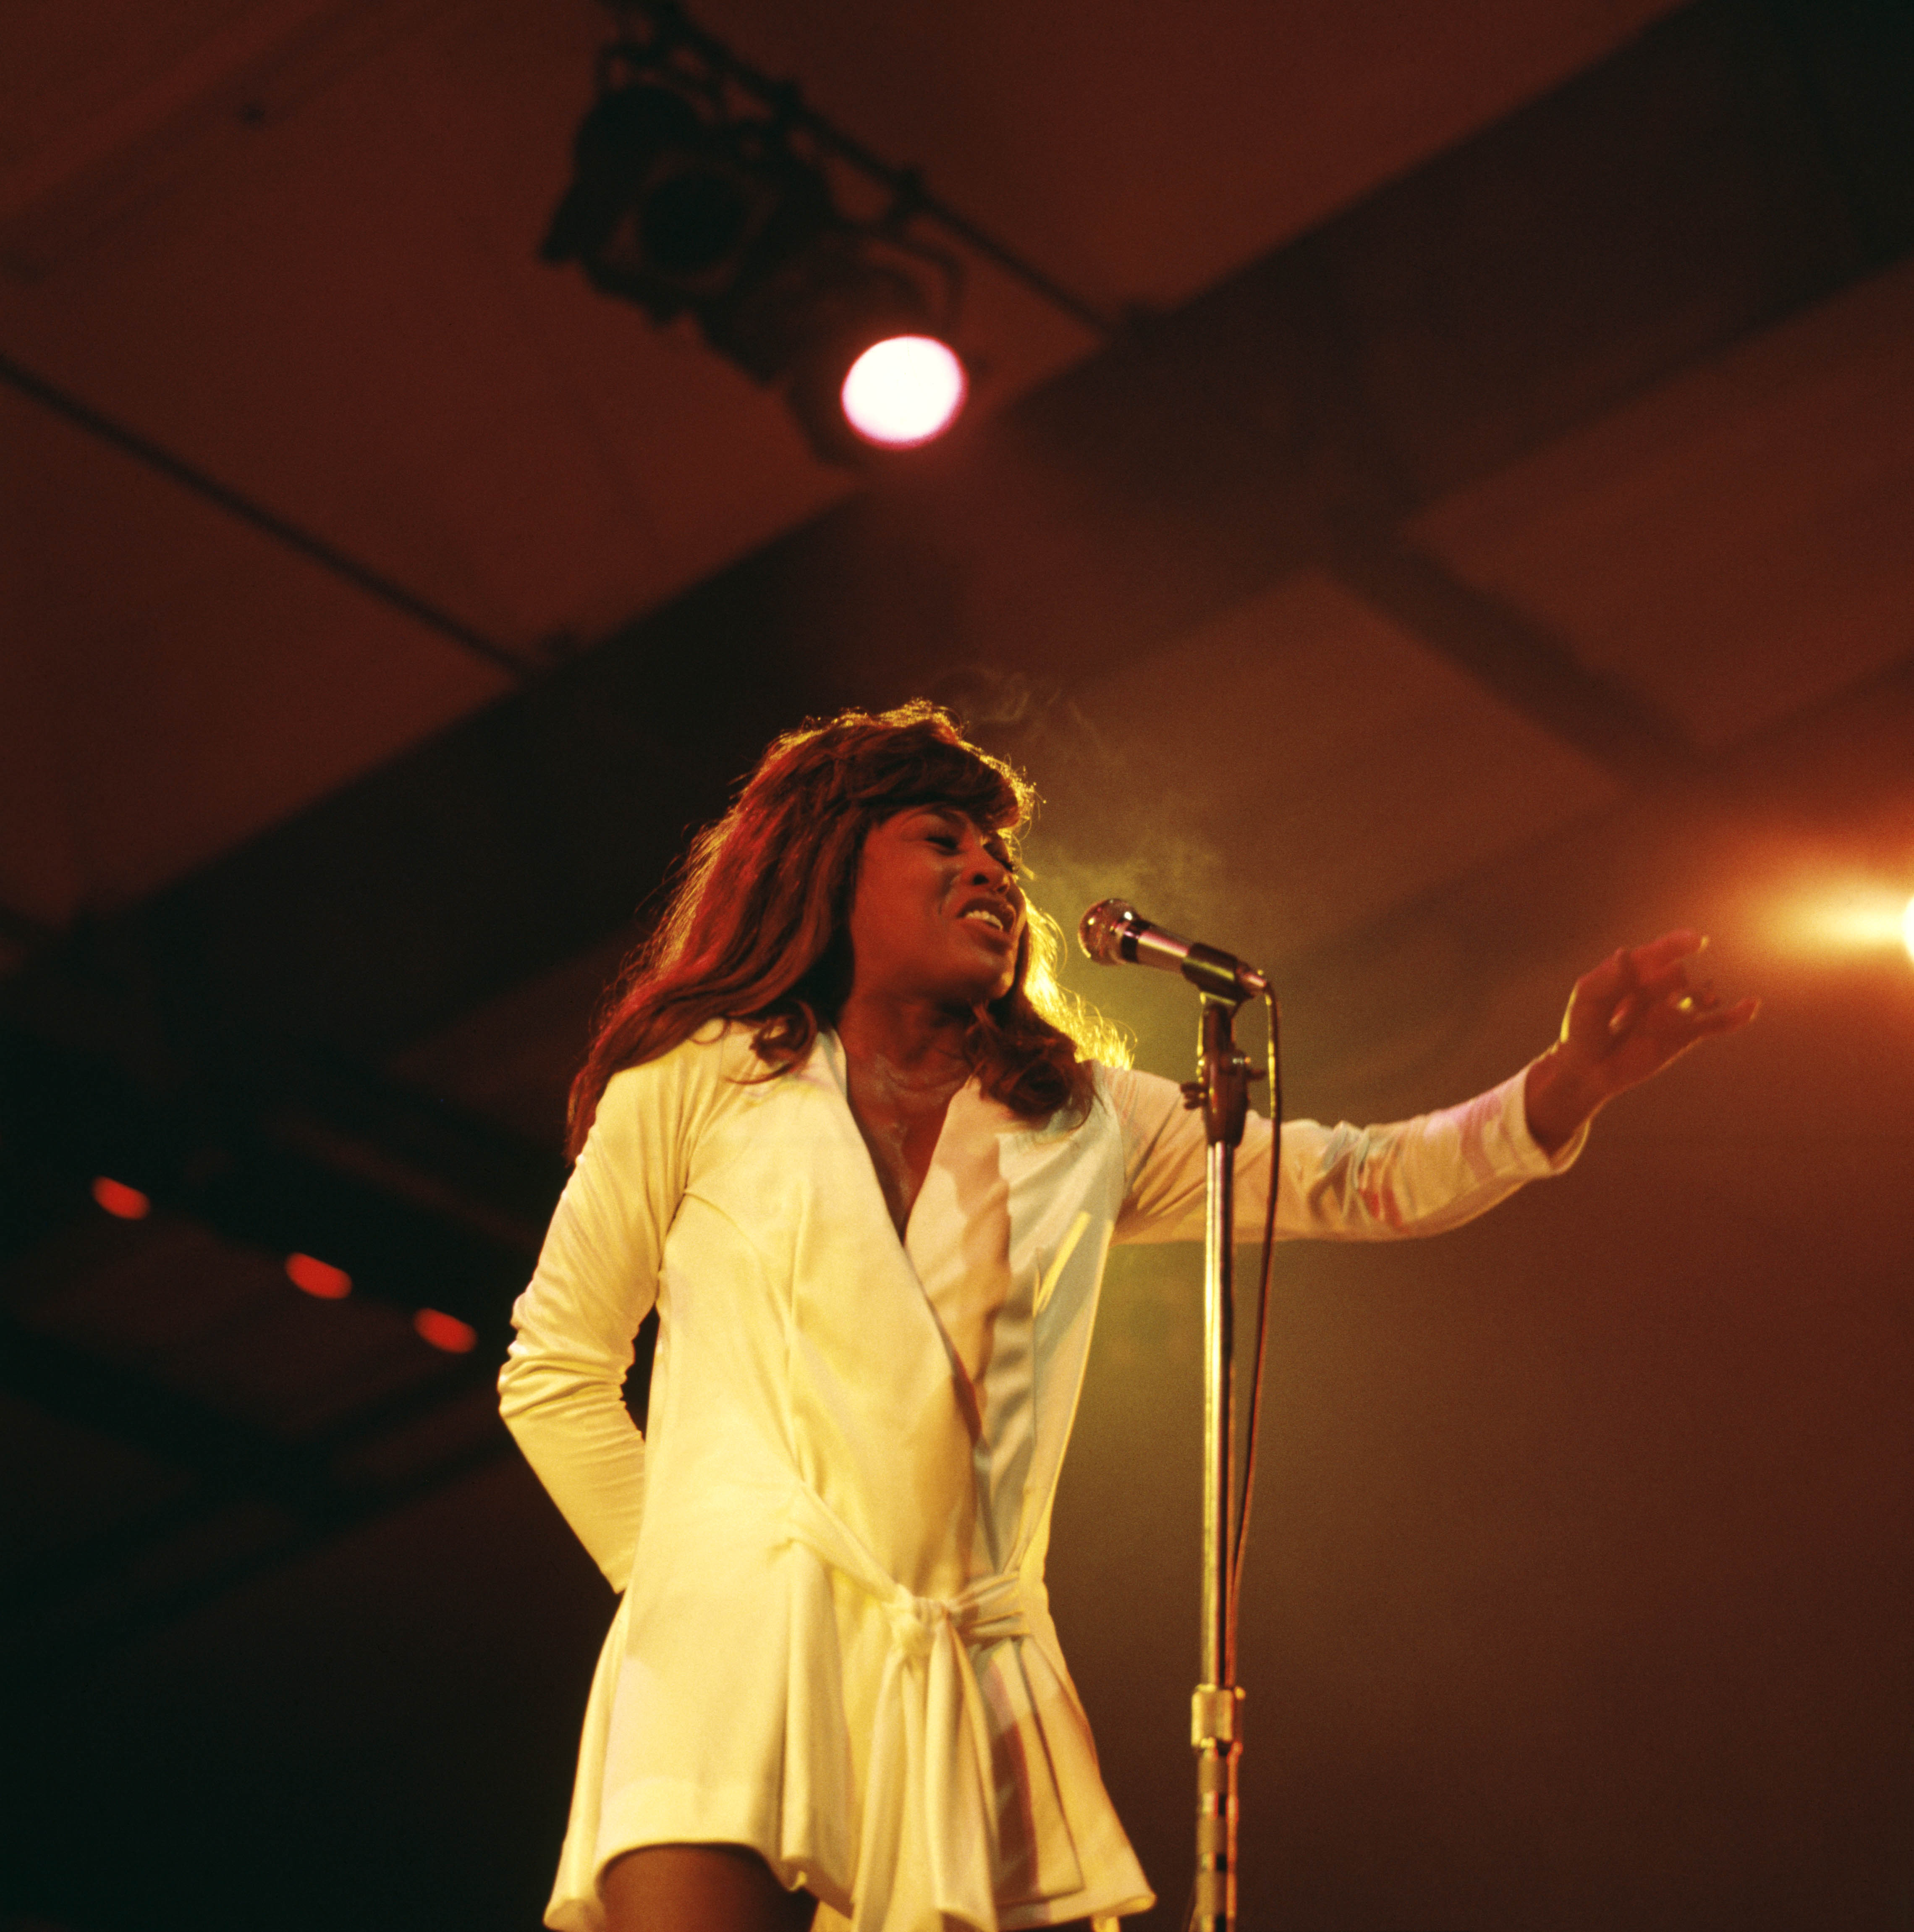 Die Sängerin auf der Bühne am 11. Juli 1970. | Quelle: Getty Images